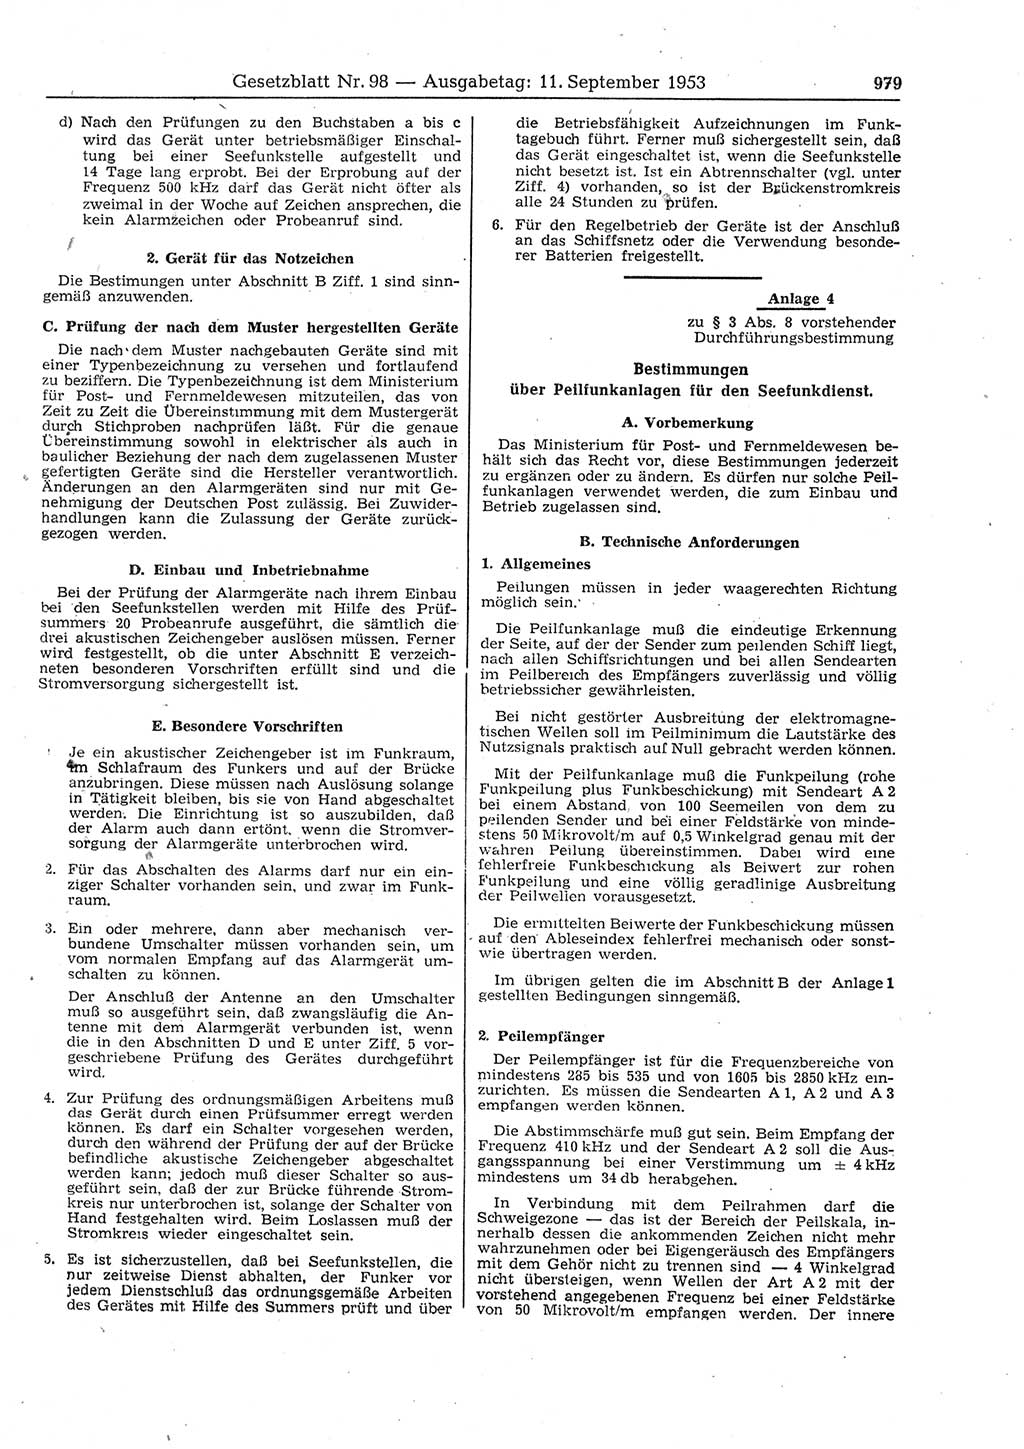 Gesetzblatt (GBl.) der Deutschen Demokratischen Republik (DDR) 1953, Seite 979 (GBl. DDR 1953, S. 979)